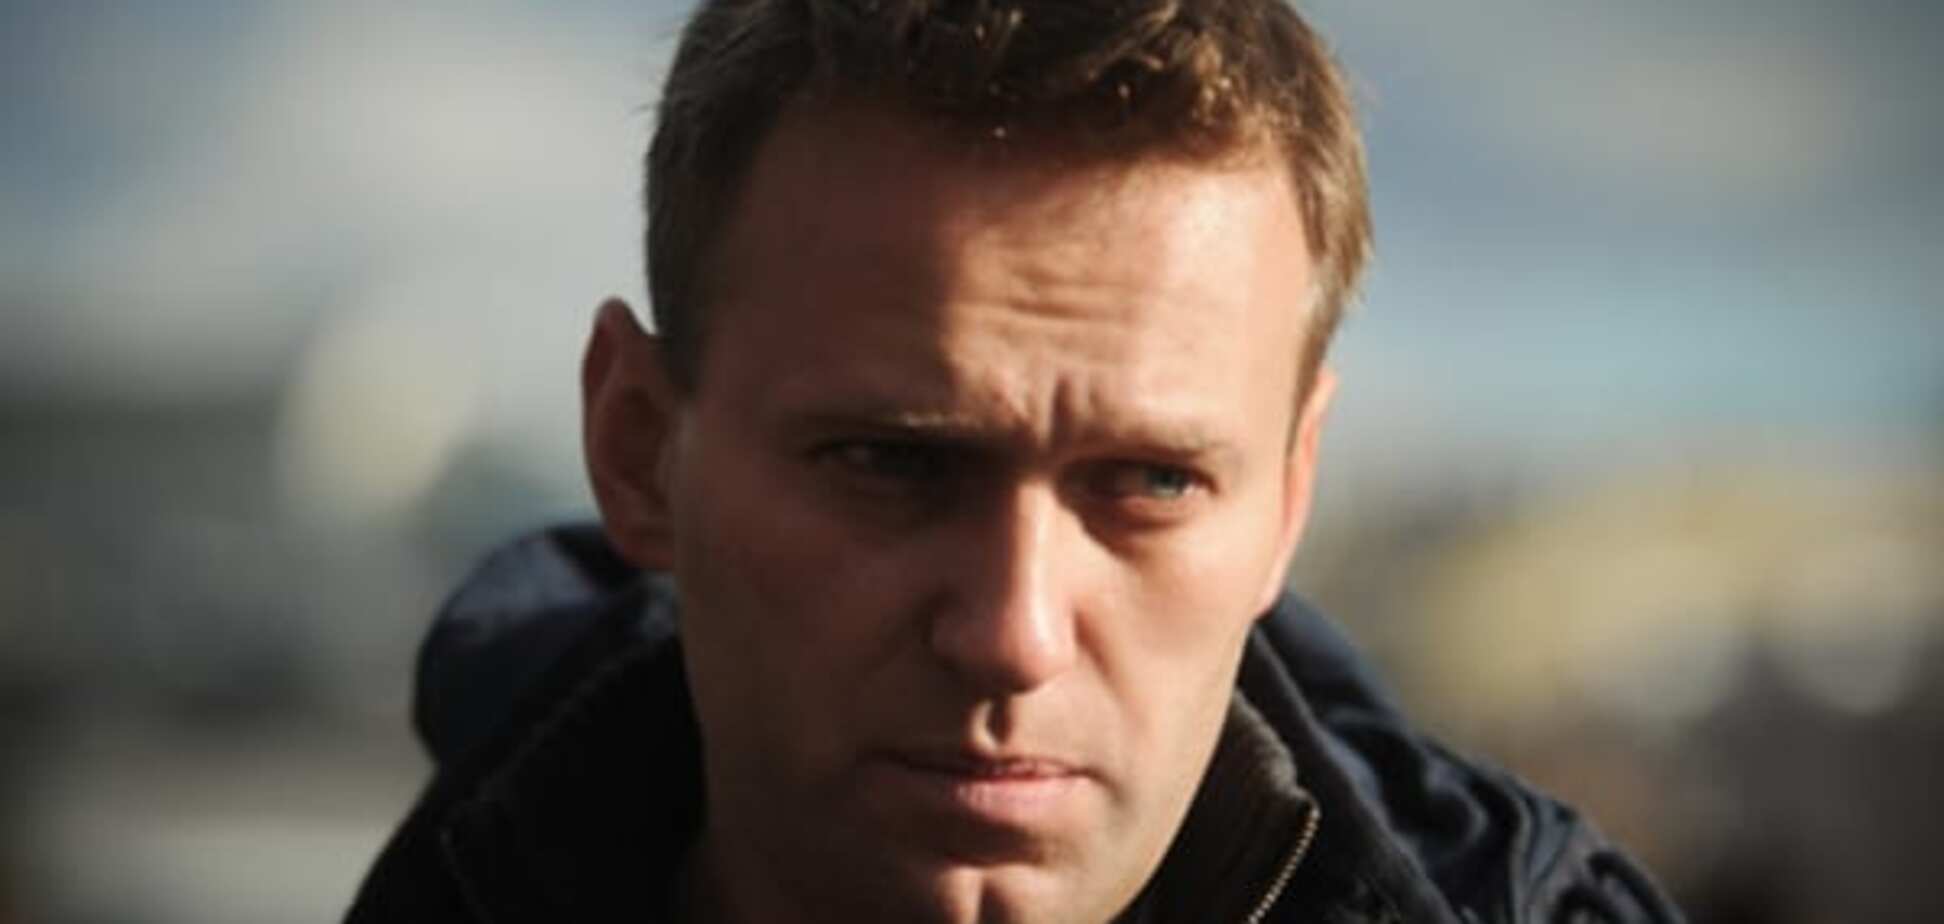 ЗМІ: у Росії через інтерв'ю з Навальним звільнили головреда 'Комерсанта'